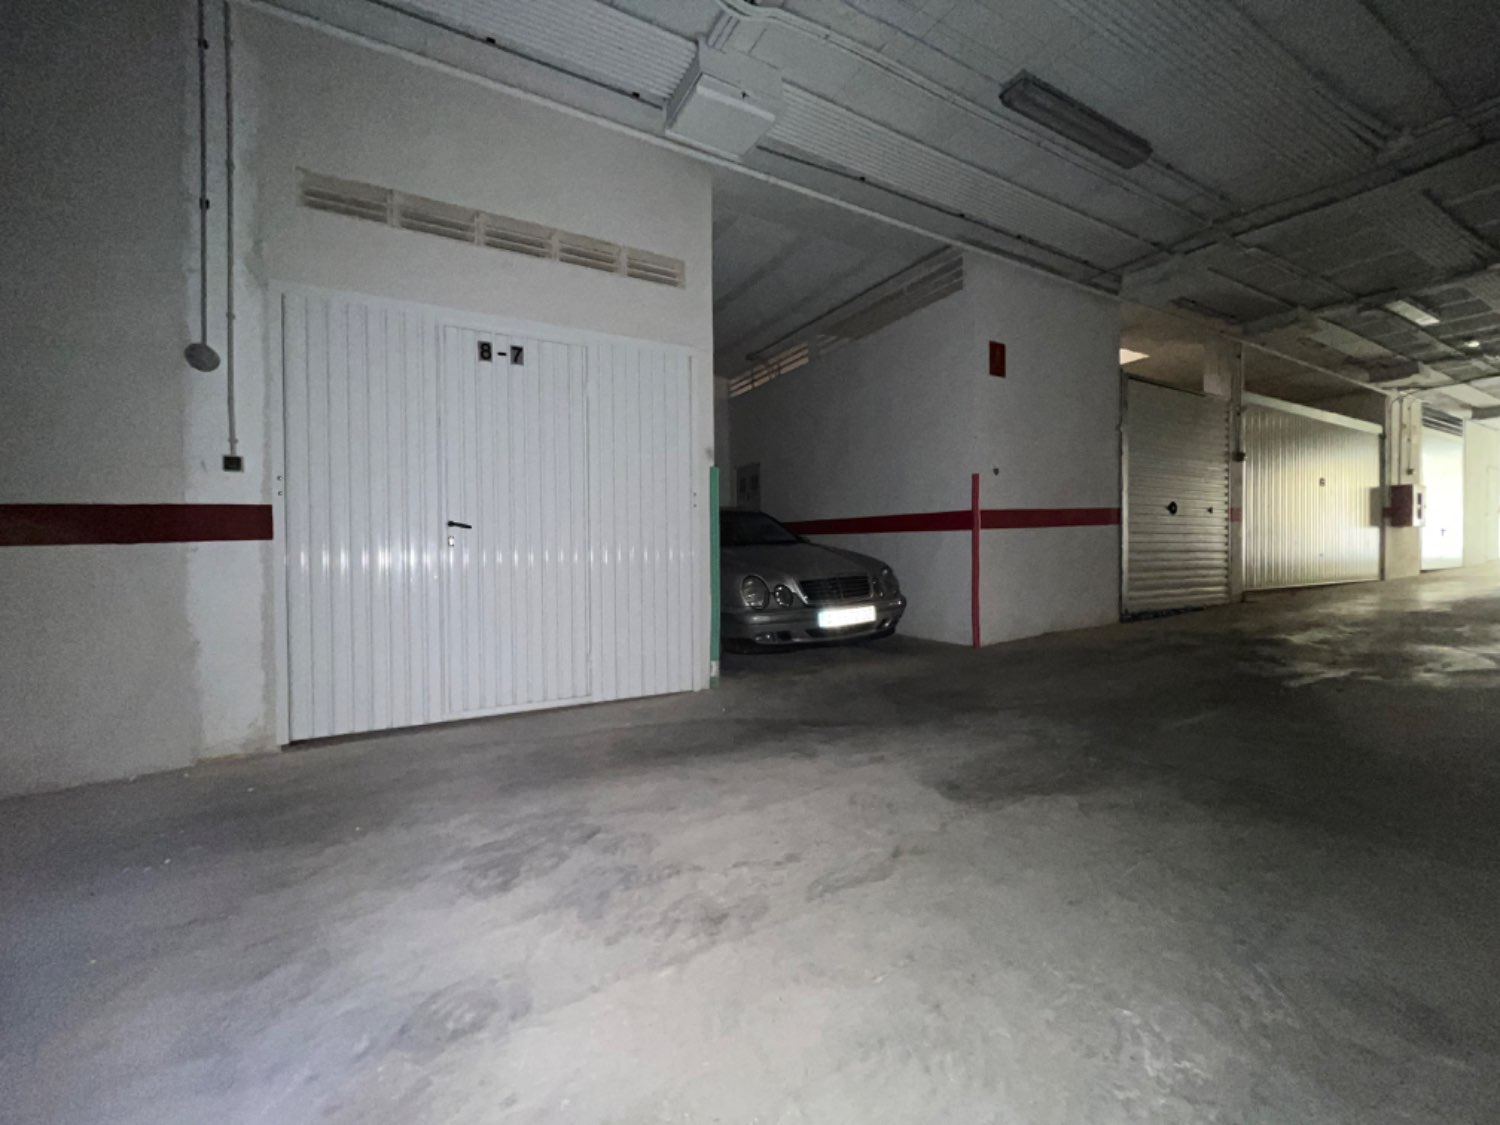 Lukket dobbelt garage til 2 biler